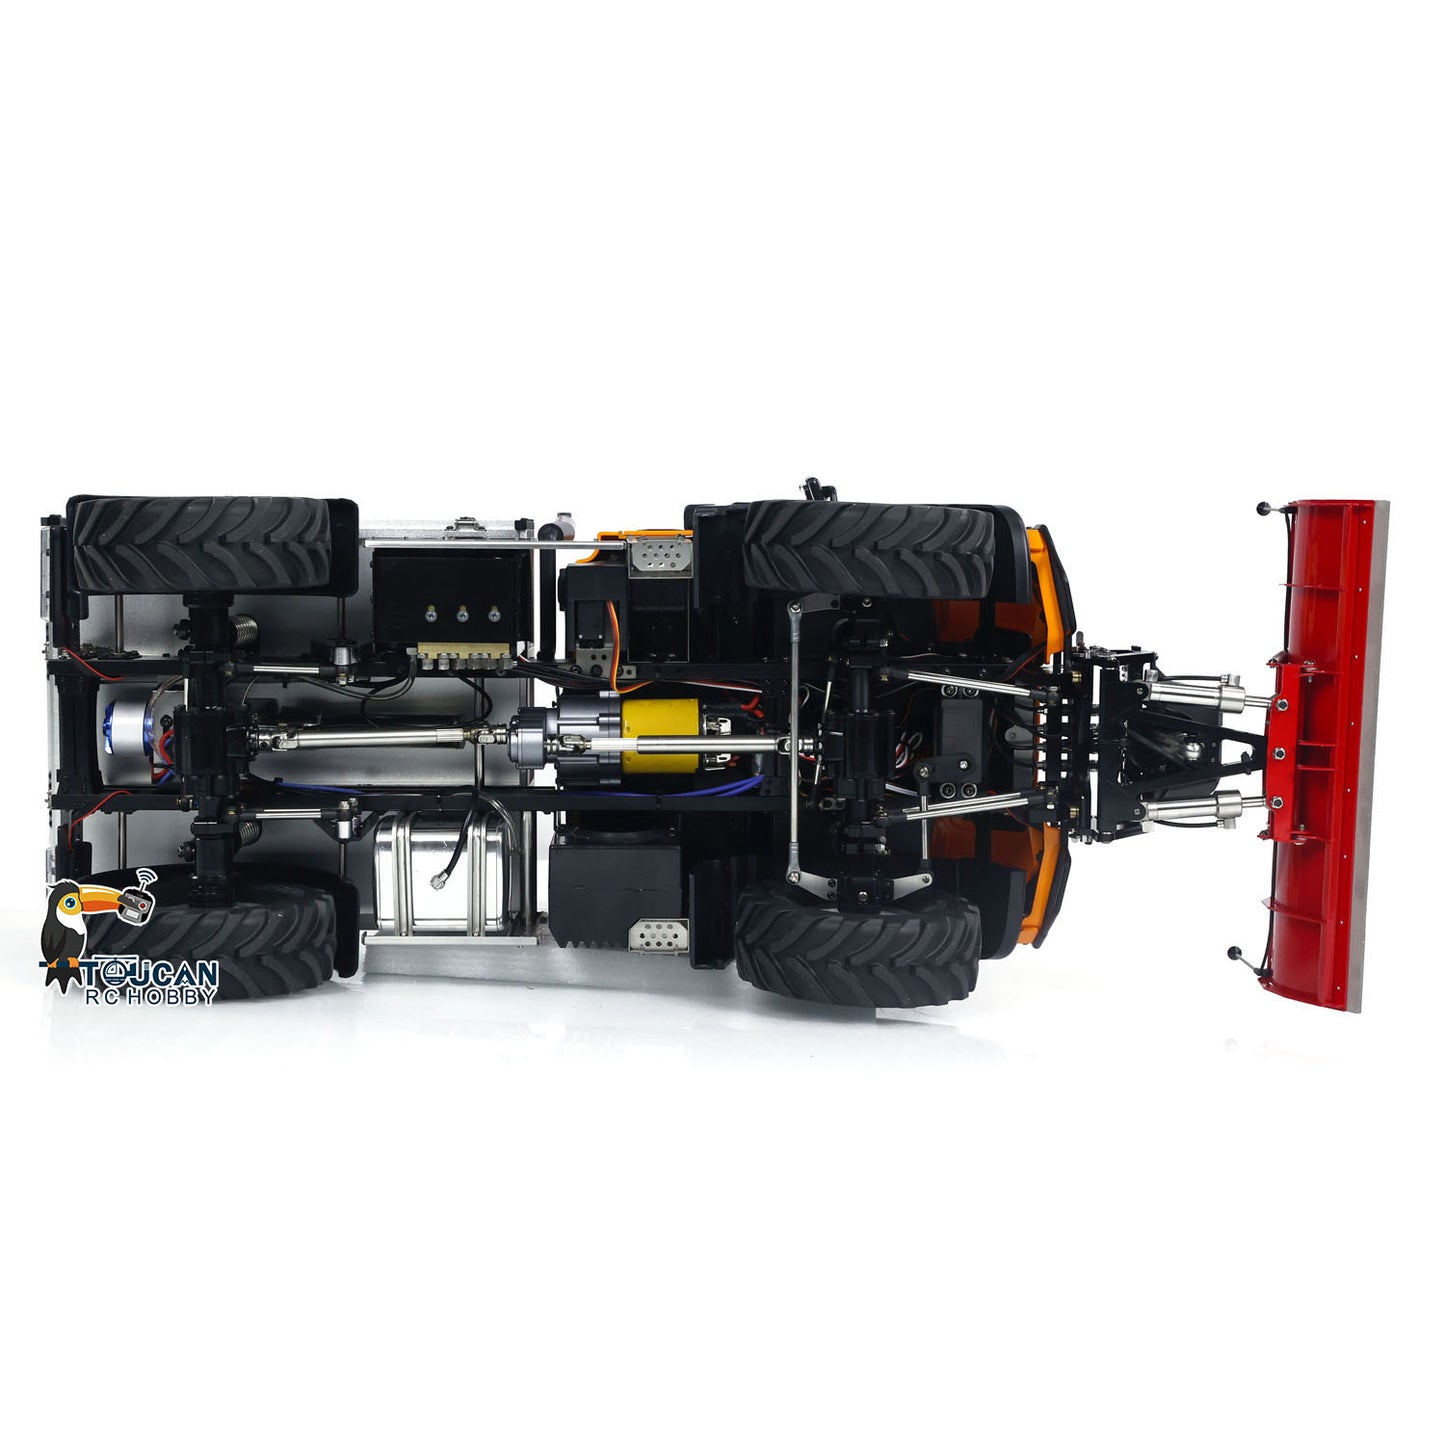 U423 1:10 4X4 Hydraulic RC Off-road Dump Crawler With Snow Blade